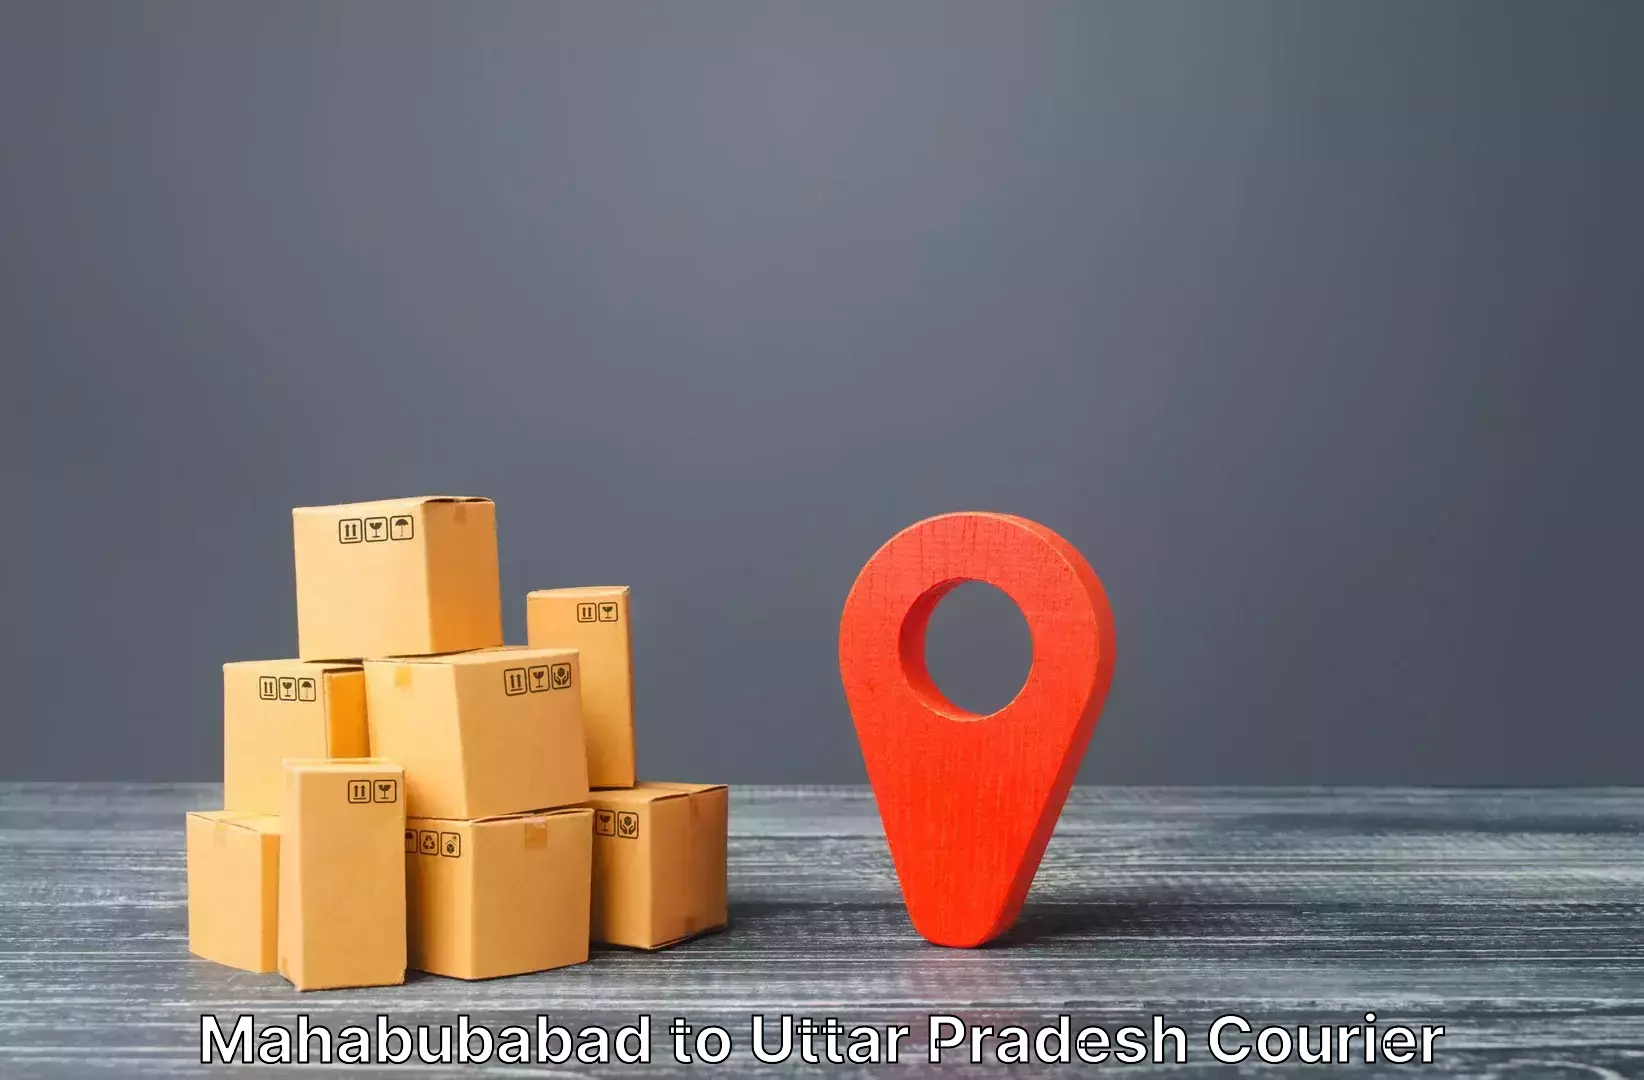 Luggage shipment specialists Mahabubabad to Pilibhit